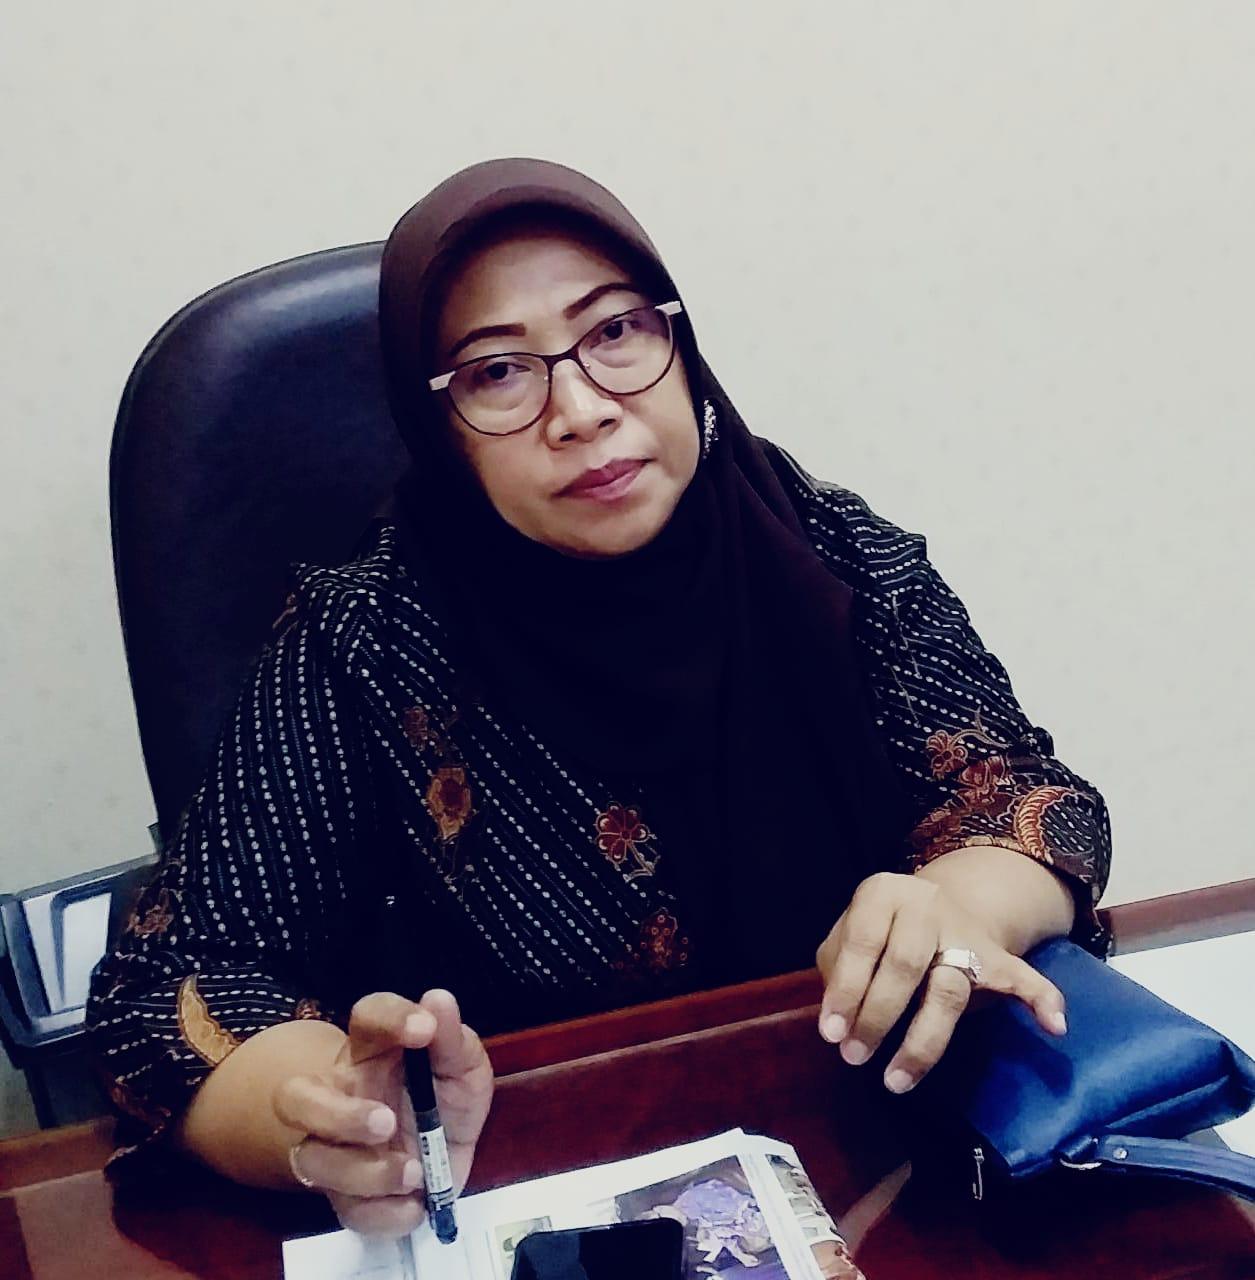 DPRD Samarinda Dorong Disdik Gelar Bimtek bagi Tenaga Pendidik untuk Cegah Pelecehan Seksual di Sekolah